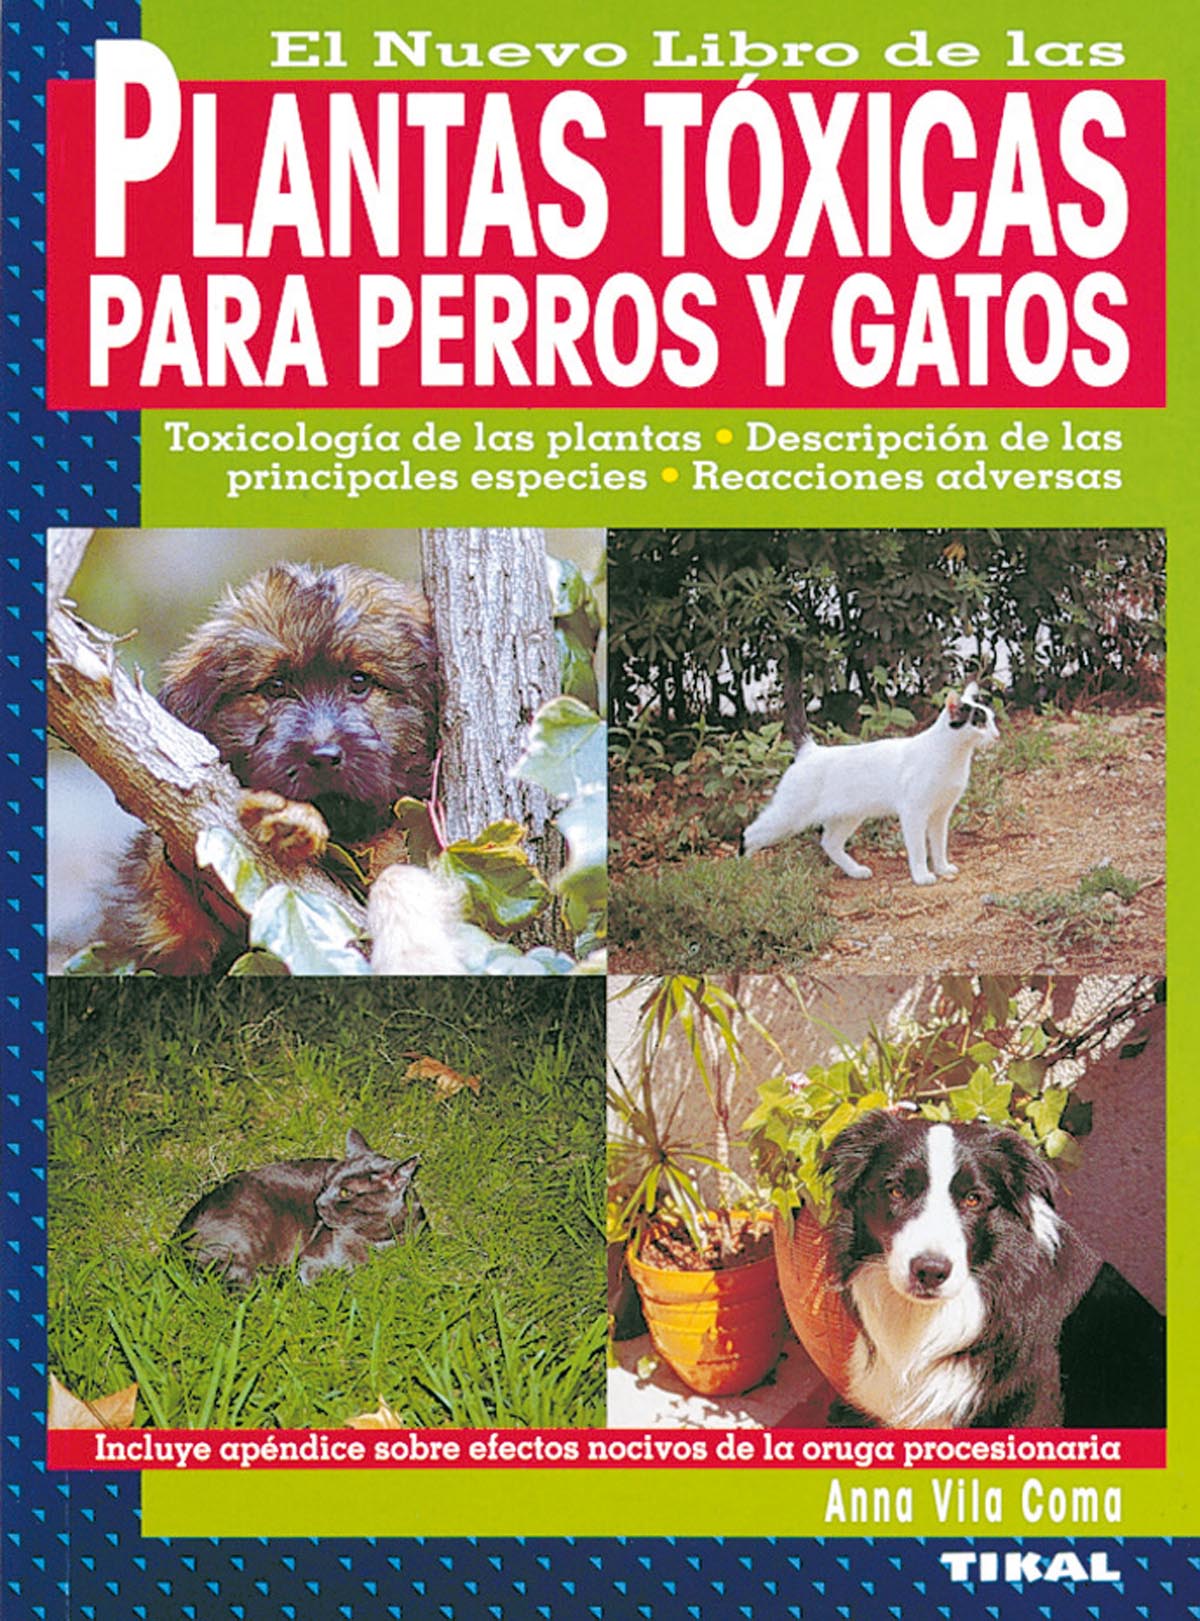 Plantas txicas para perros y gatos